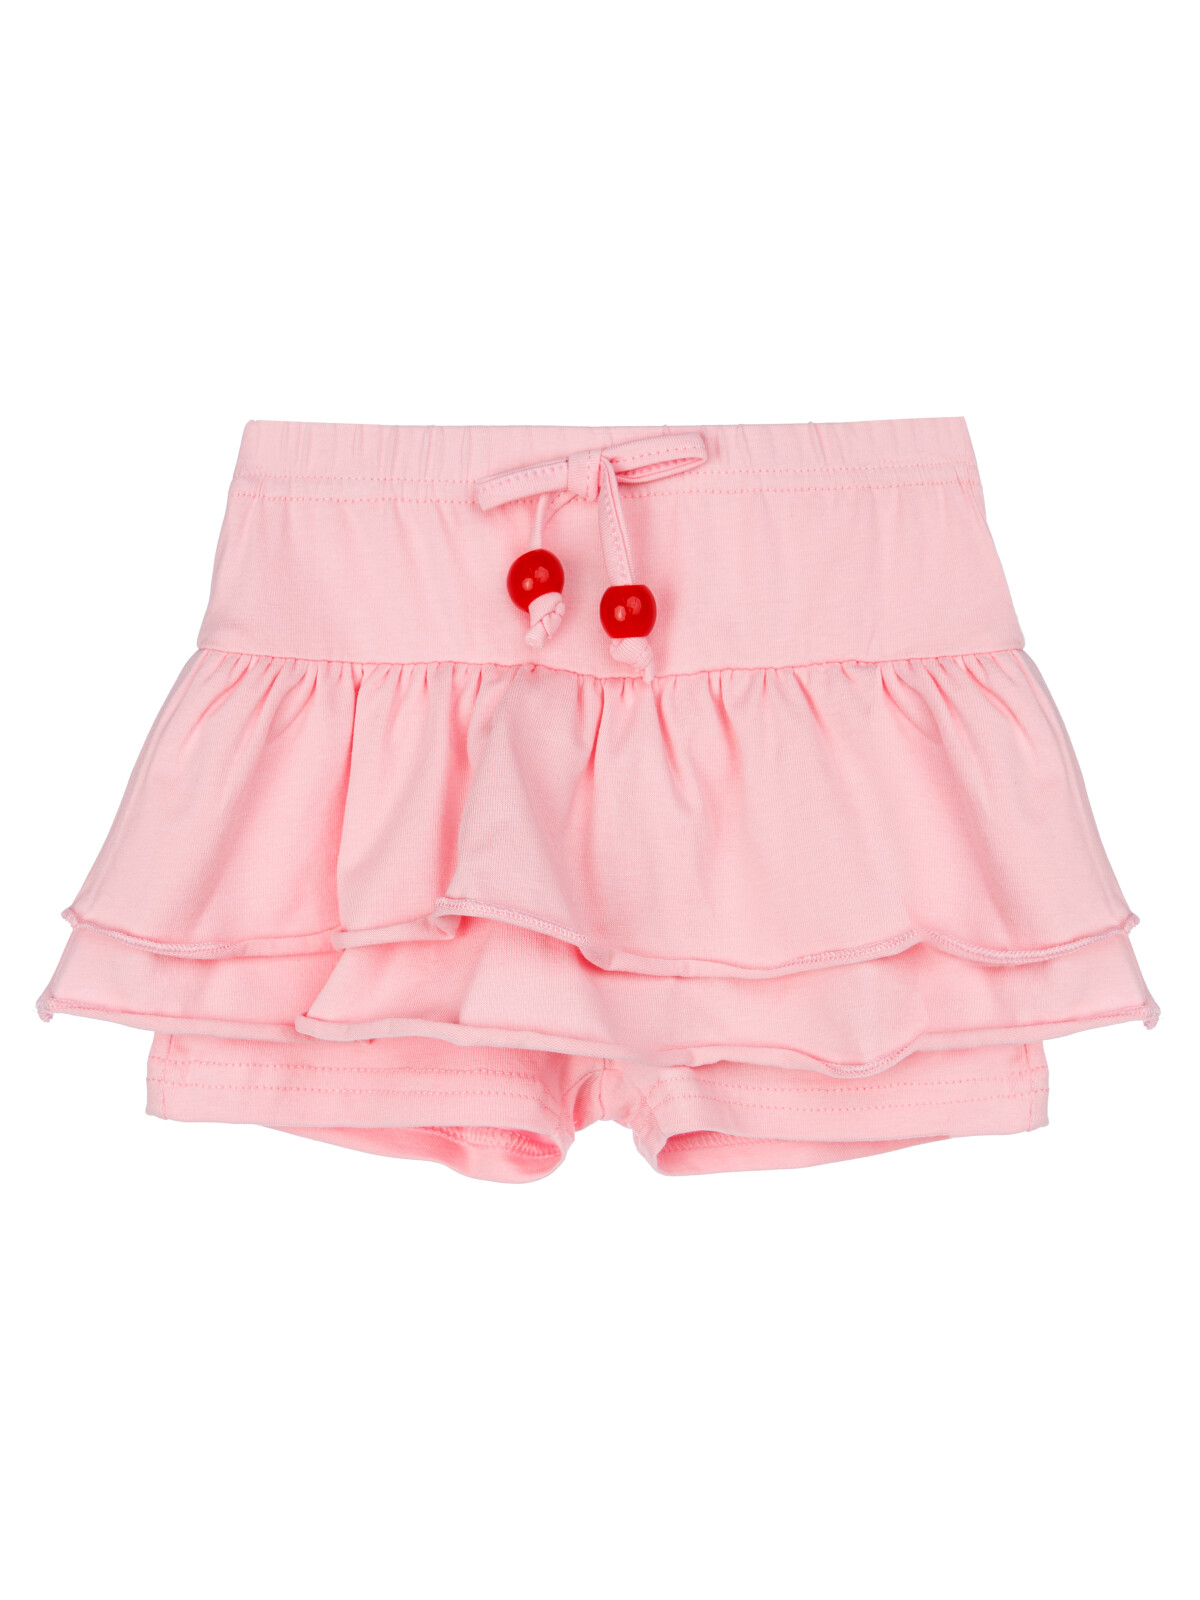 Юбка-шорты детская PlayToday 12429022, светло-розовый, 86